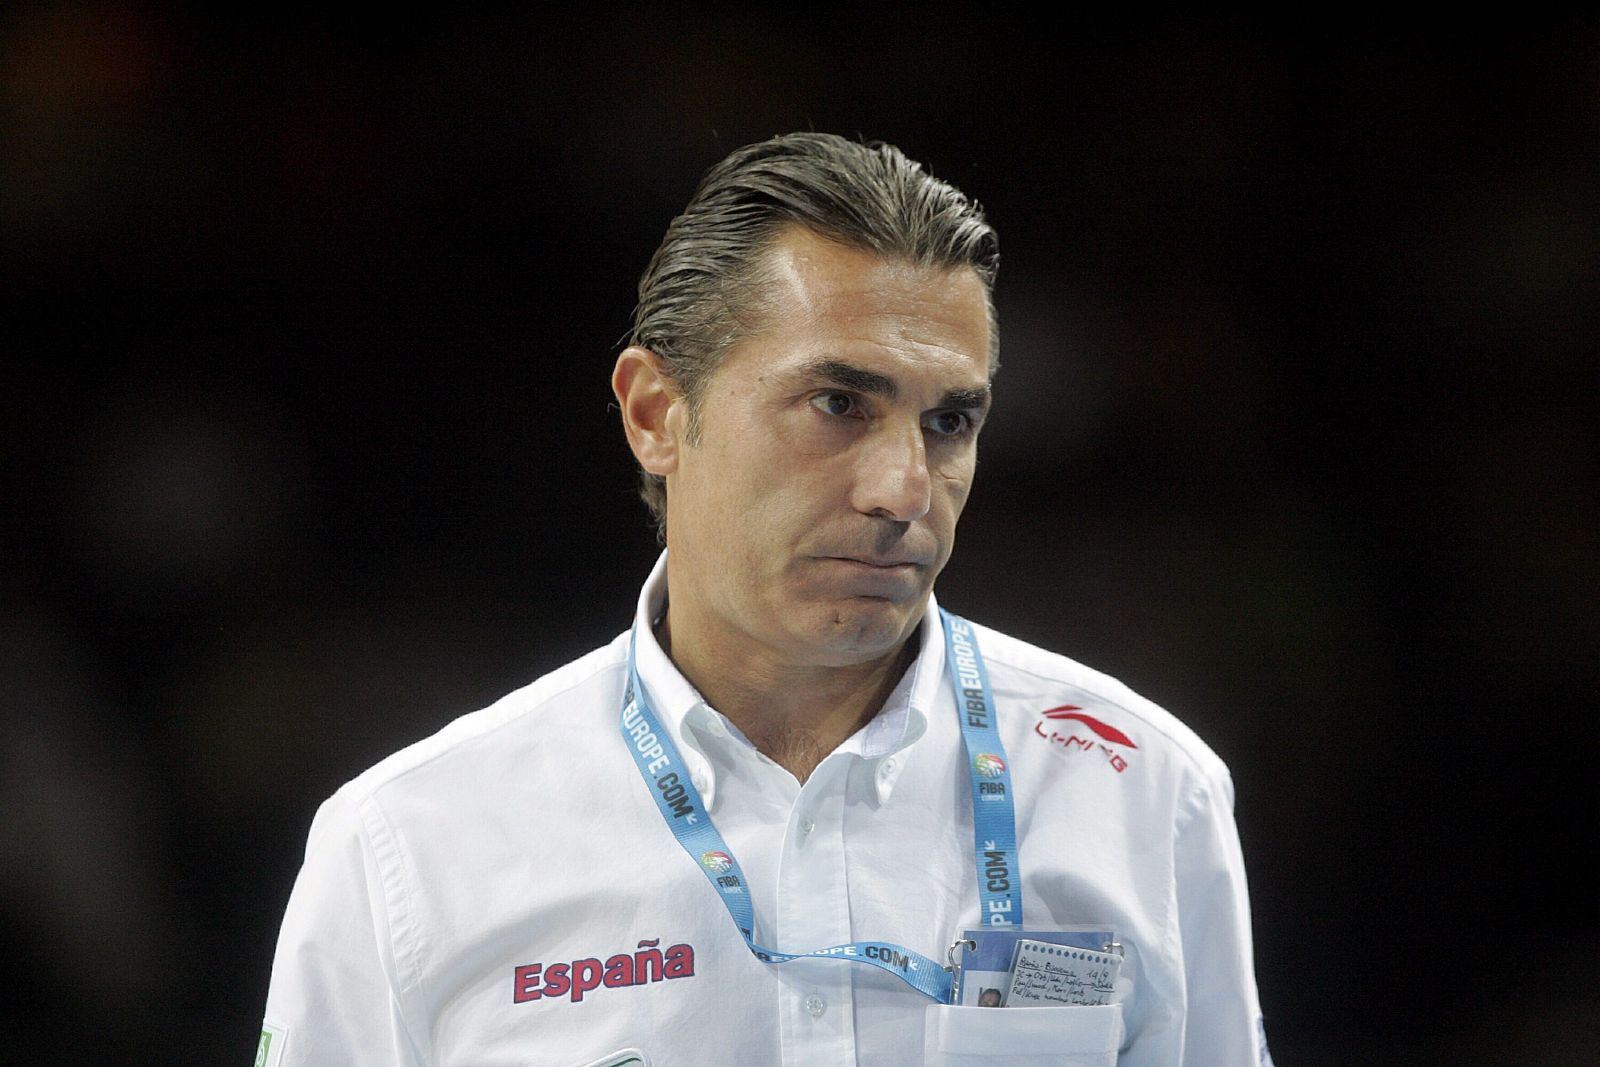 El entrenador de la selección española de baloncesto, Sergio Scariolo, gesticula durante el partido de cuartos de final del Europeo 2011